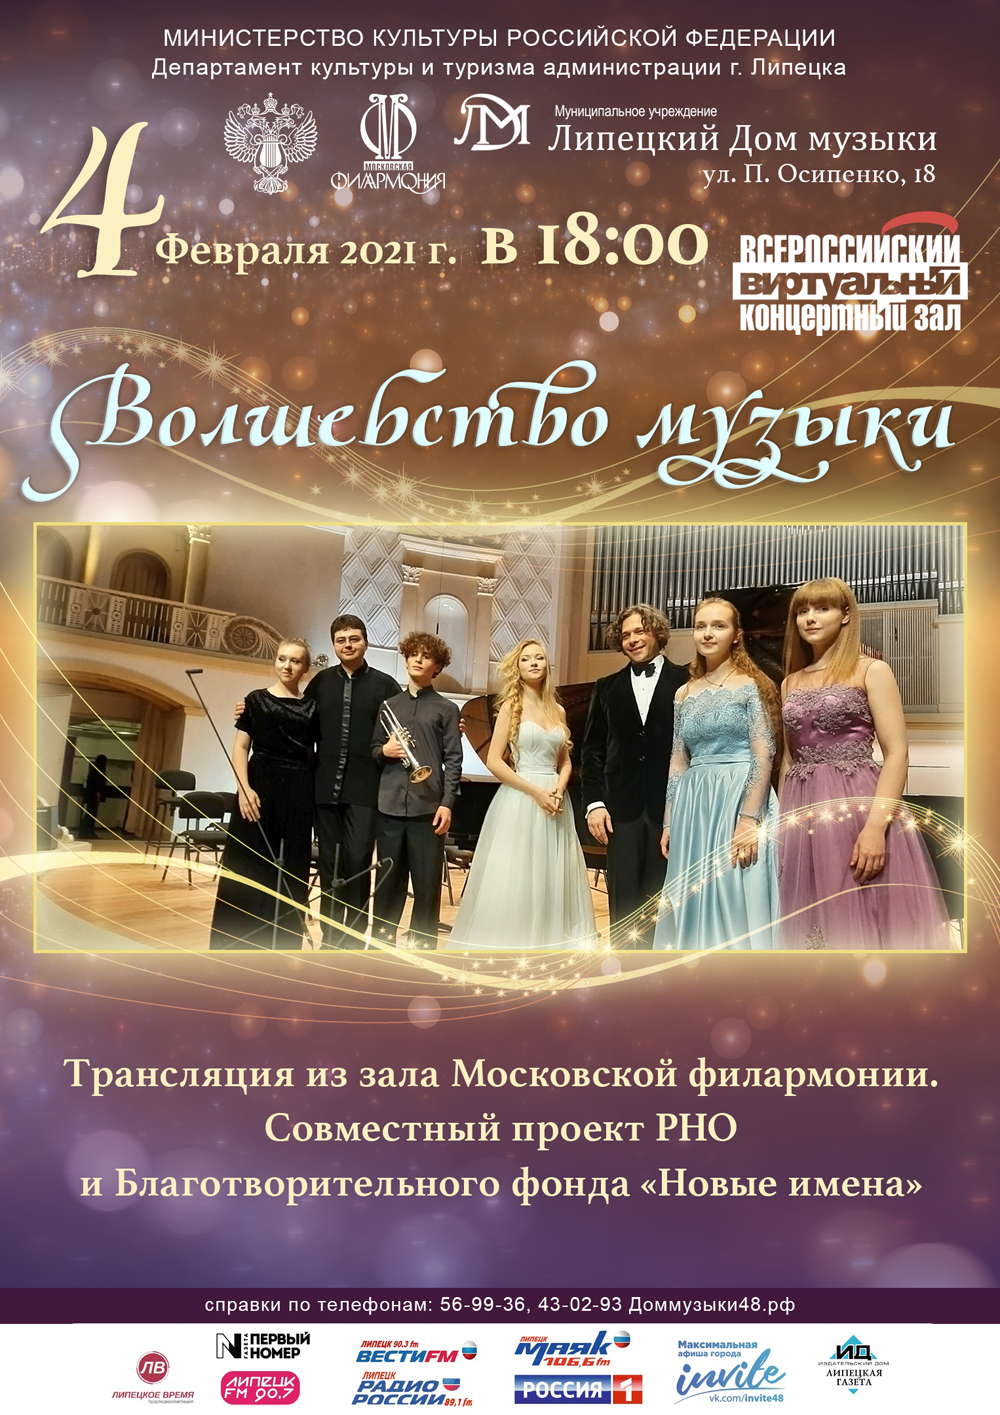 Виртуальный концертный зал: «Волшебство музыки» (04.02.2021 в 18:00)